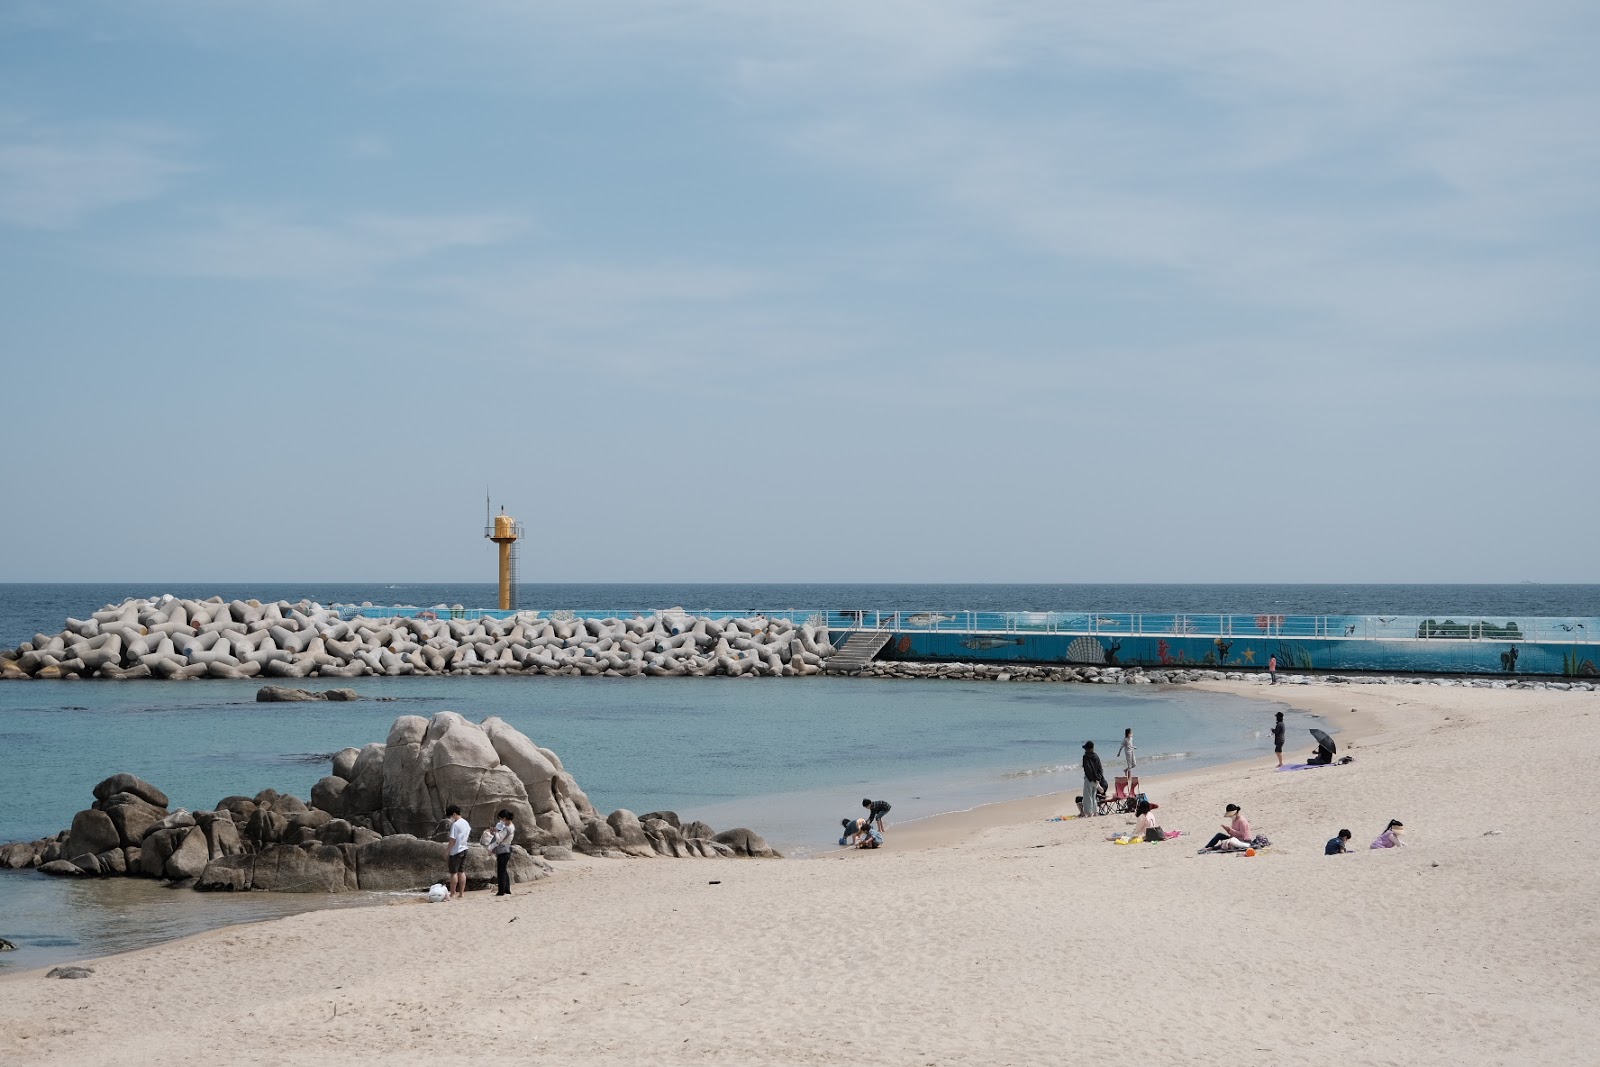 Yeongjin Beach'in fotoğrafı çok temiz temizlik seviyesi ile